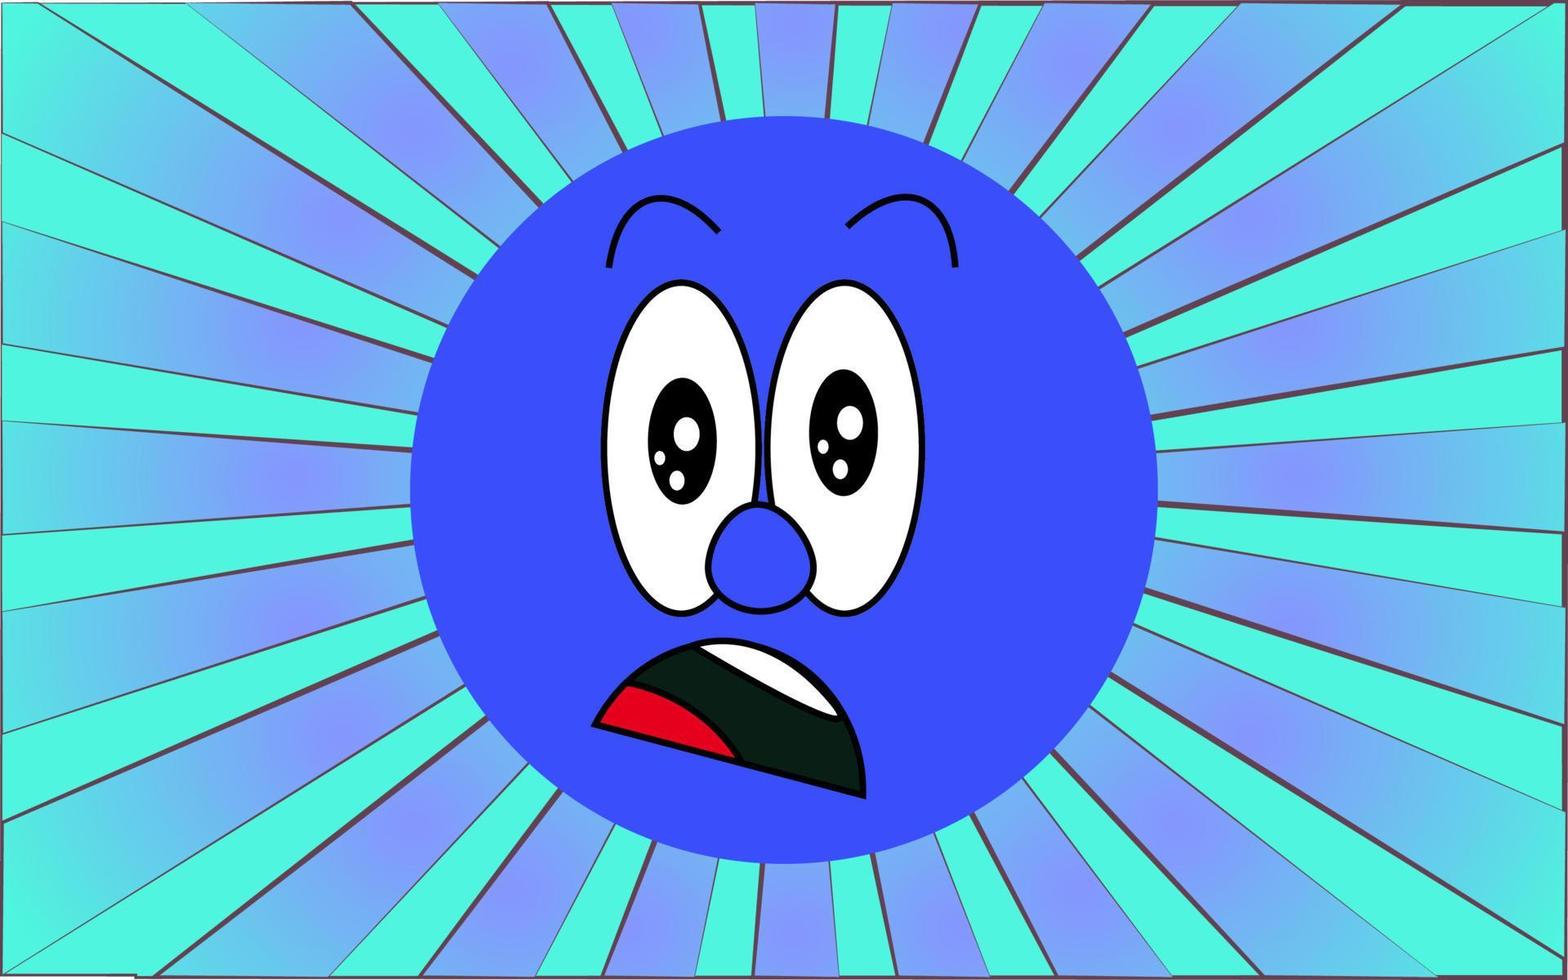 visage emoji surpris rond bleu émotionnel sur fond de rayons bleus abstraits. illustration vectorielle vecteur